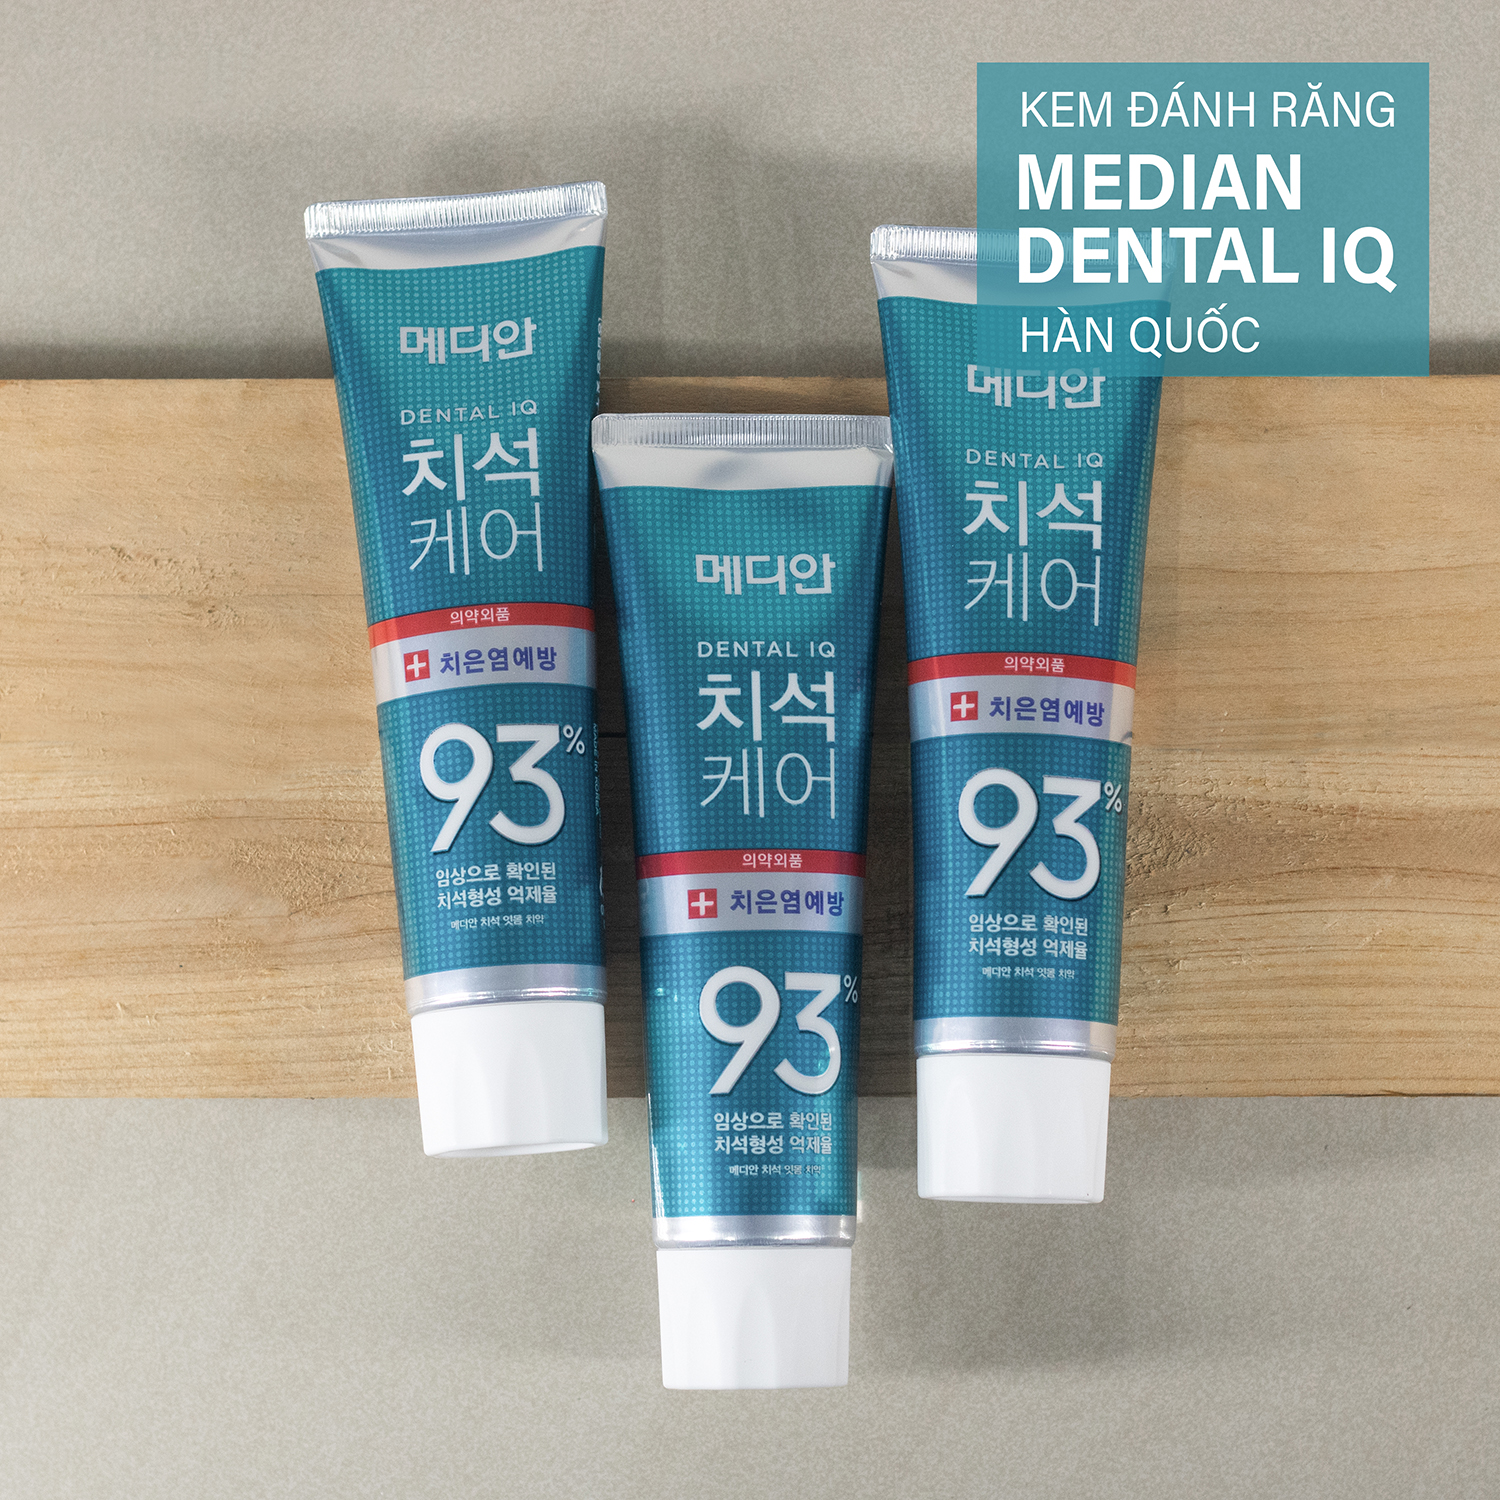 Kem Đánh Răng MEDIAN Dental IQ Màu Xanh Ngọc Bảo Vệ Nướu Và Chân Răng Hàn Quốc